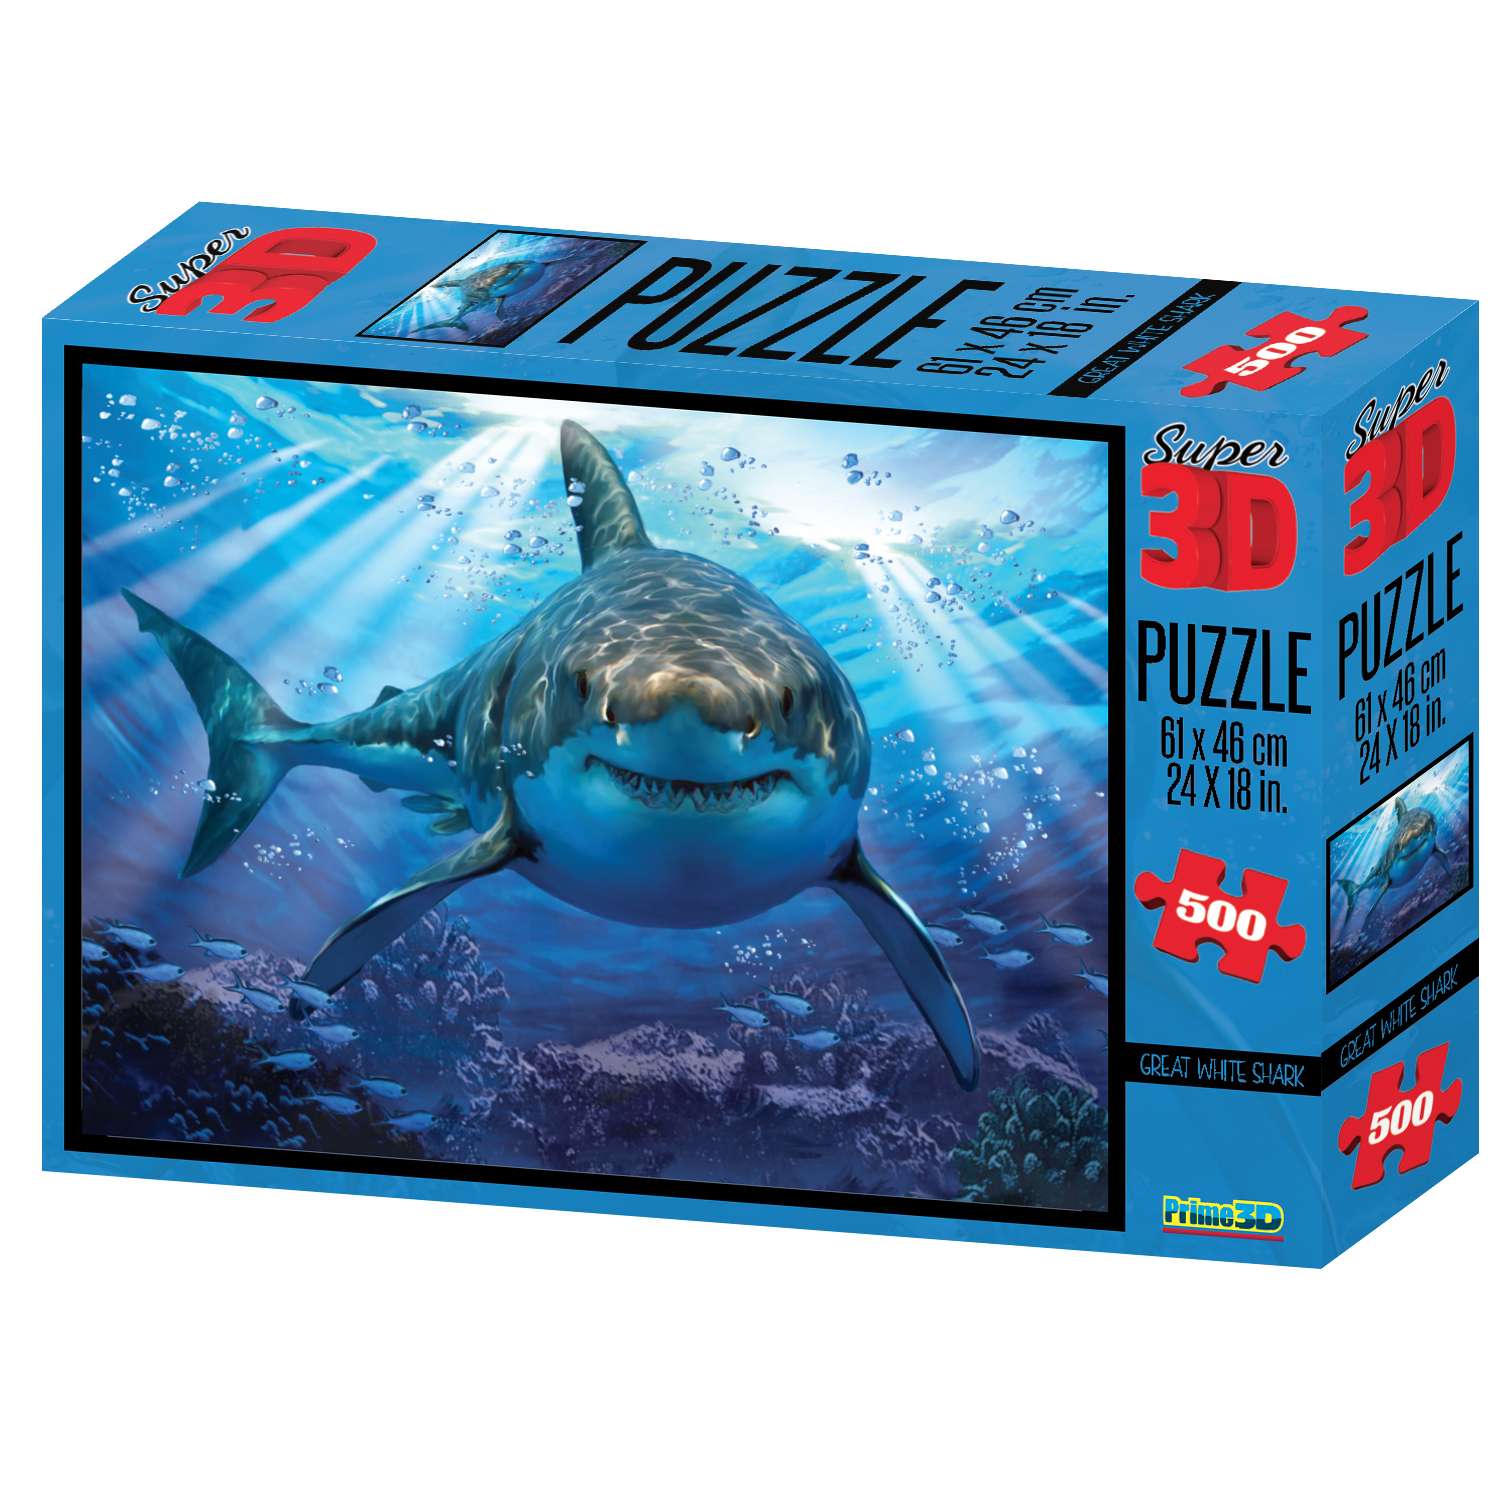 3D Пазл Prime 3D Стерео-пазл Prime 3D Большая белая акула 500 деталей 61х46 см - фото 2